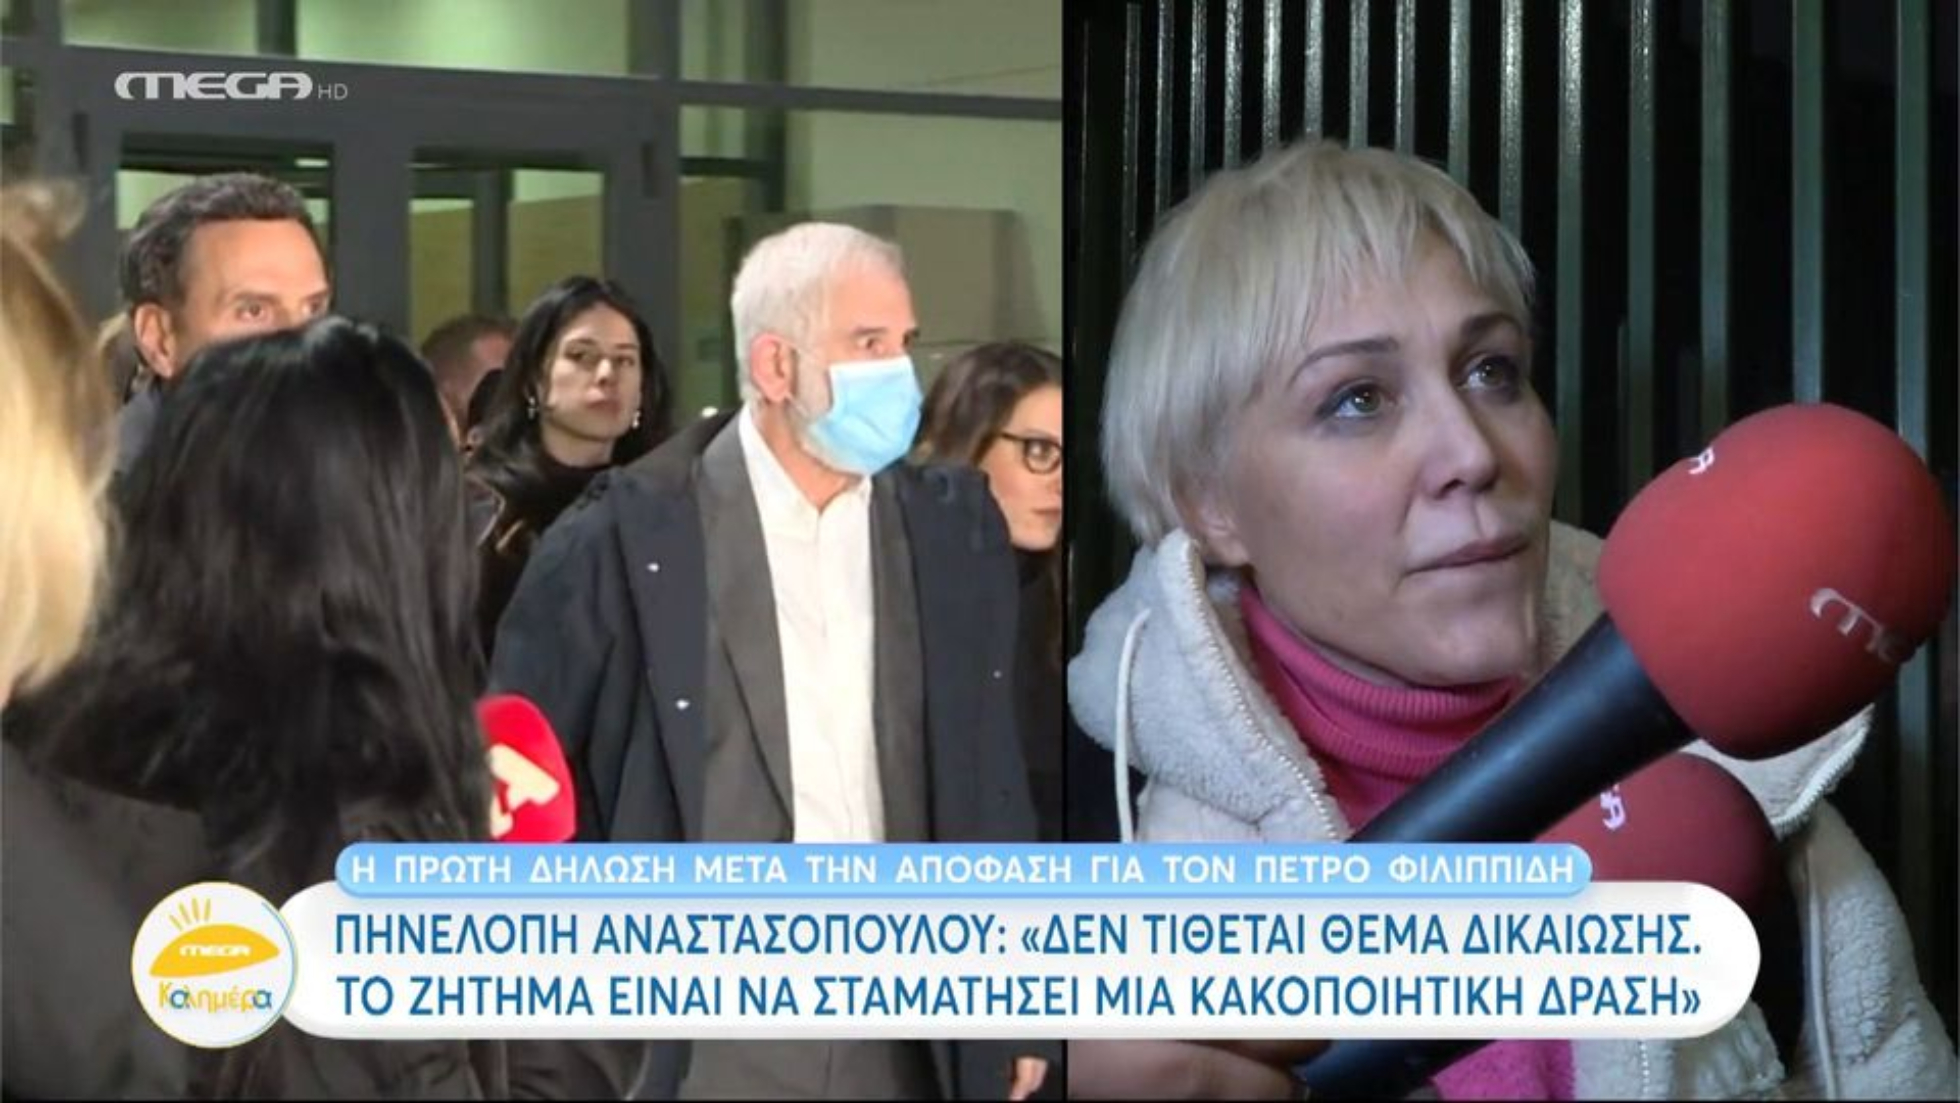 Κώστας Τσουρός για Πηνελόπη Αναστασοπούλου: «Αν δεν υπάρχει γλωσσικό σφάλμα, τότε υπάρχει πρόβλημα» (VIDEO)